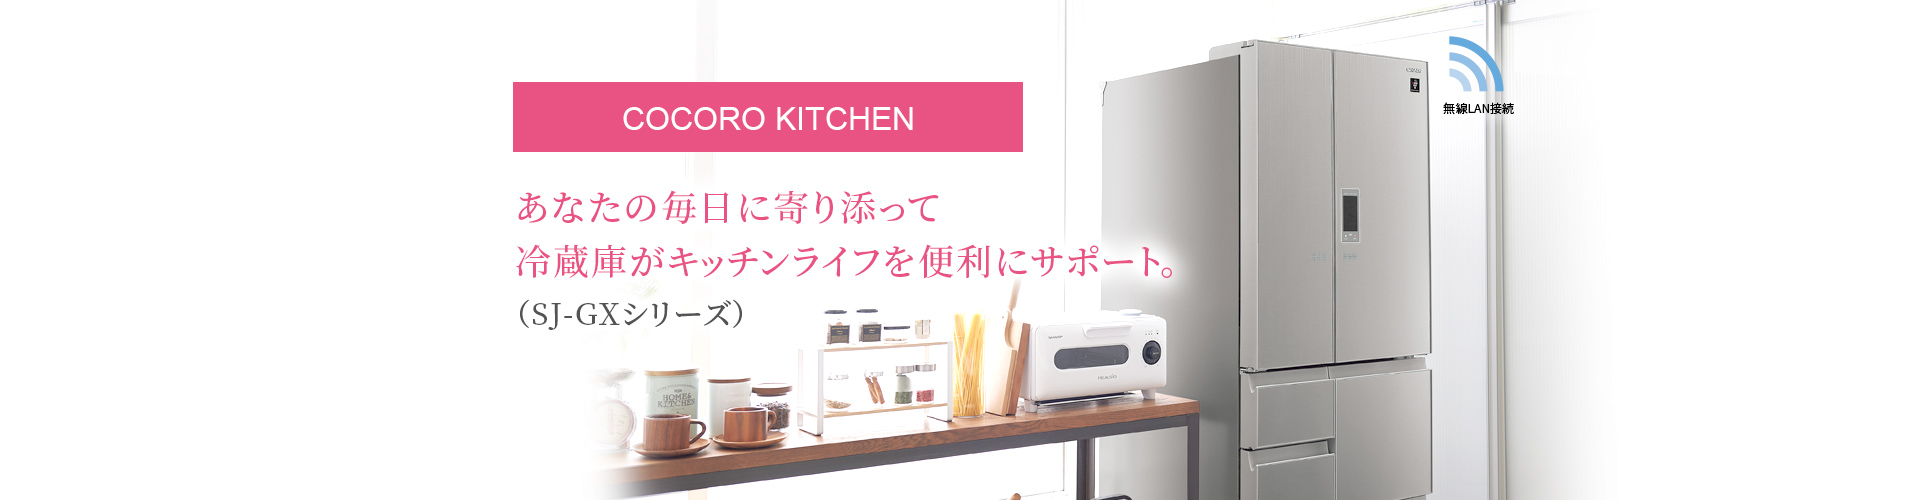 COCORO KITCHEN|あなたの毎日に寄り添って冷蔵庫がキッチンライフを便利にサポート。